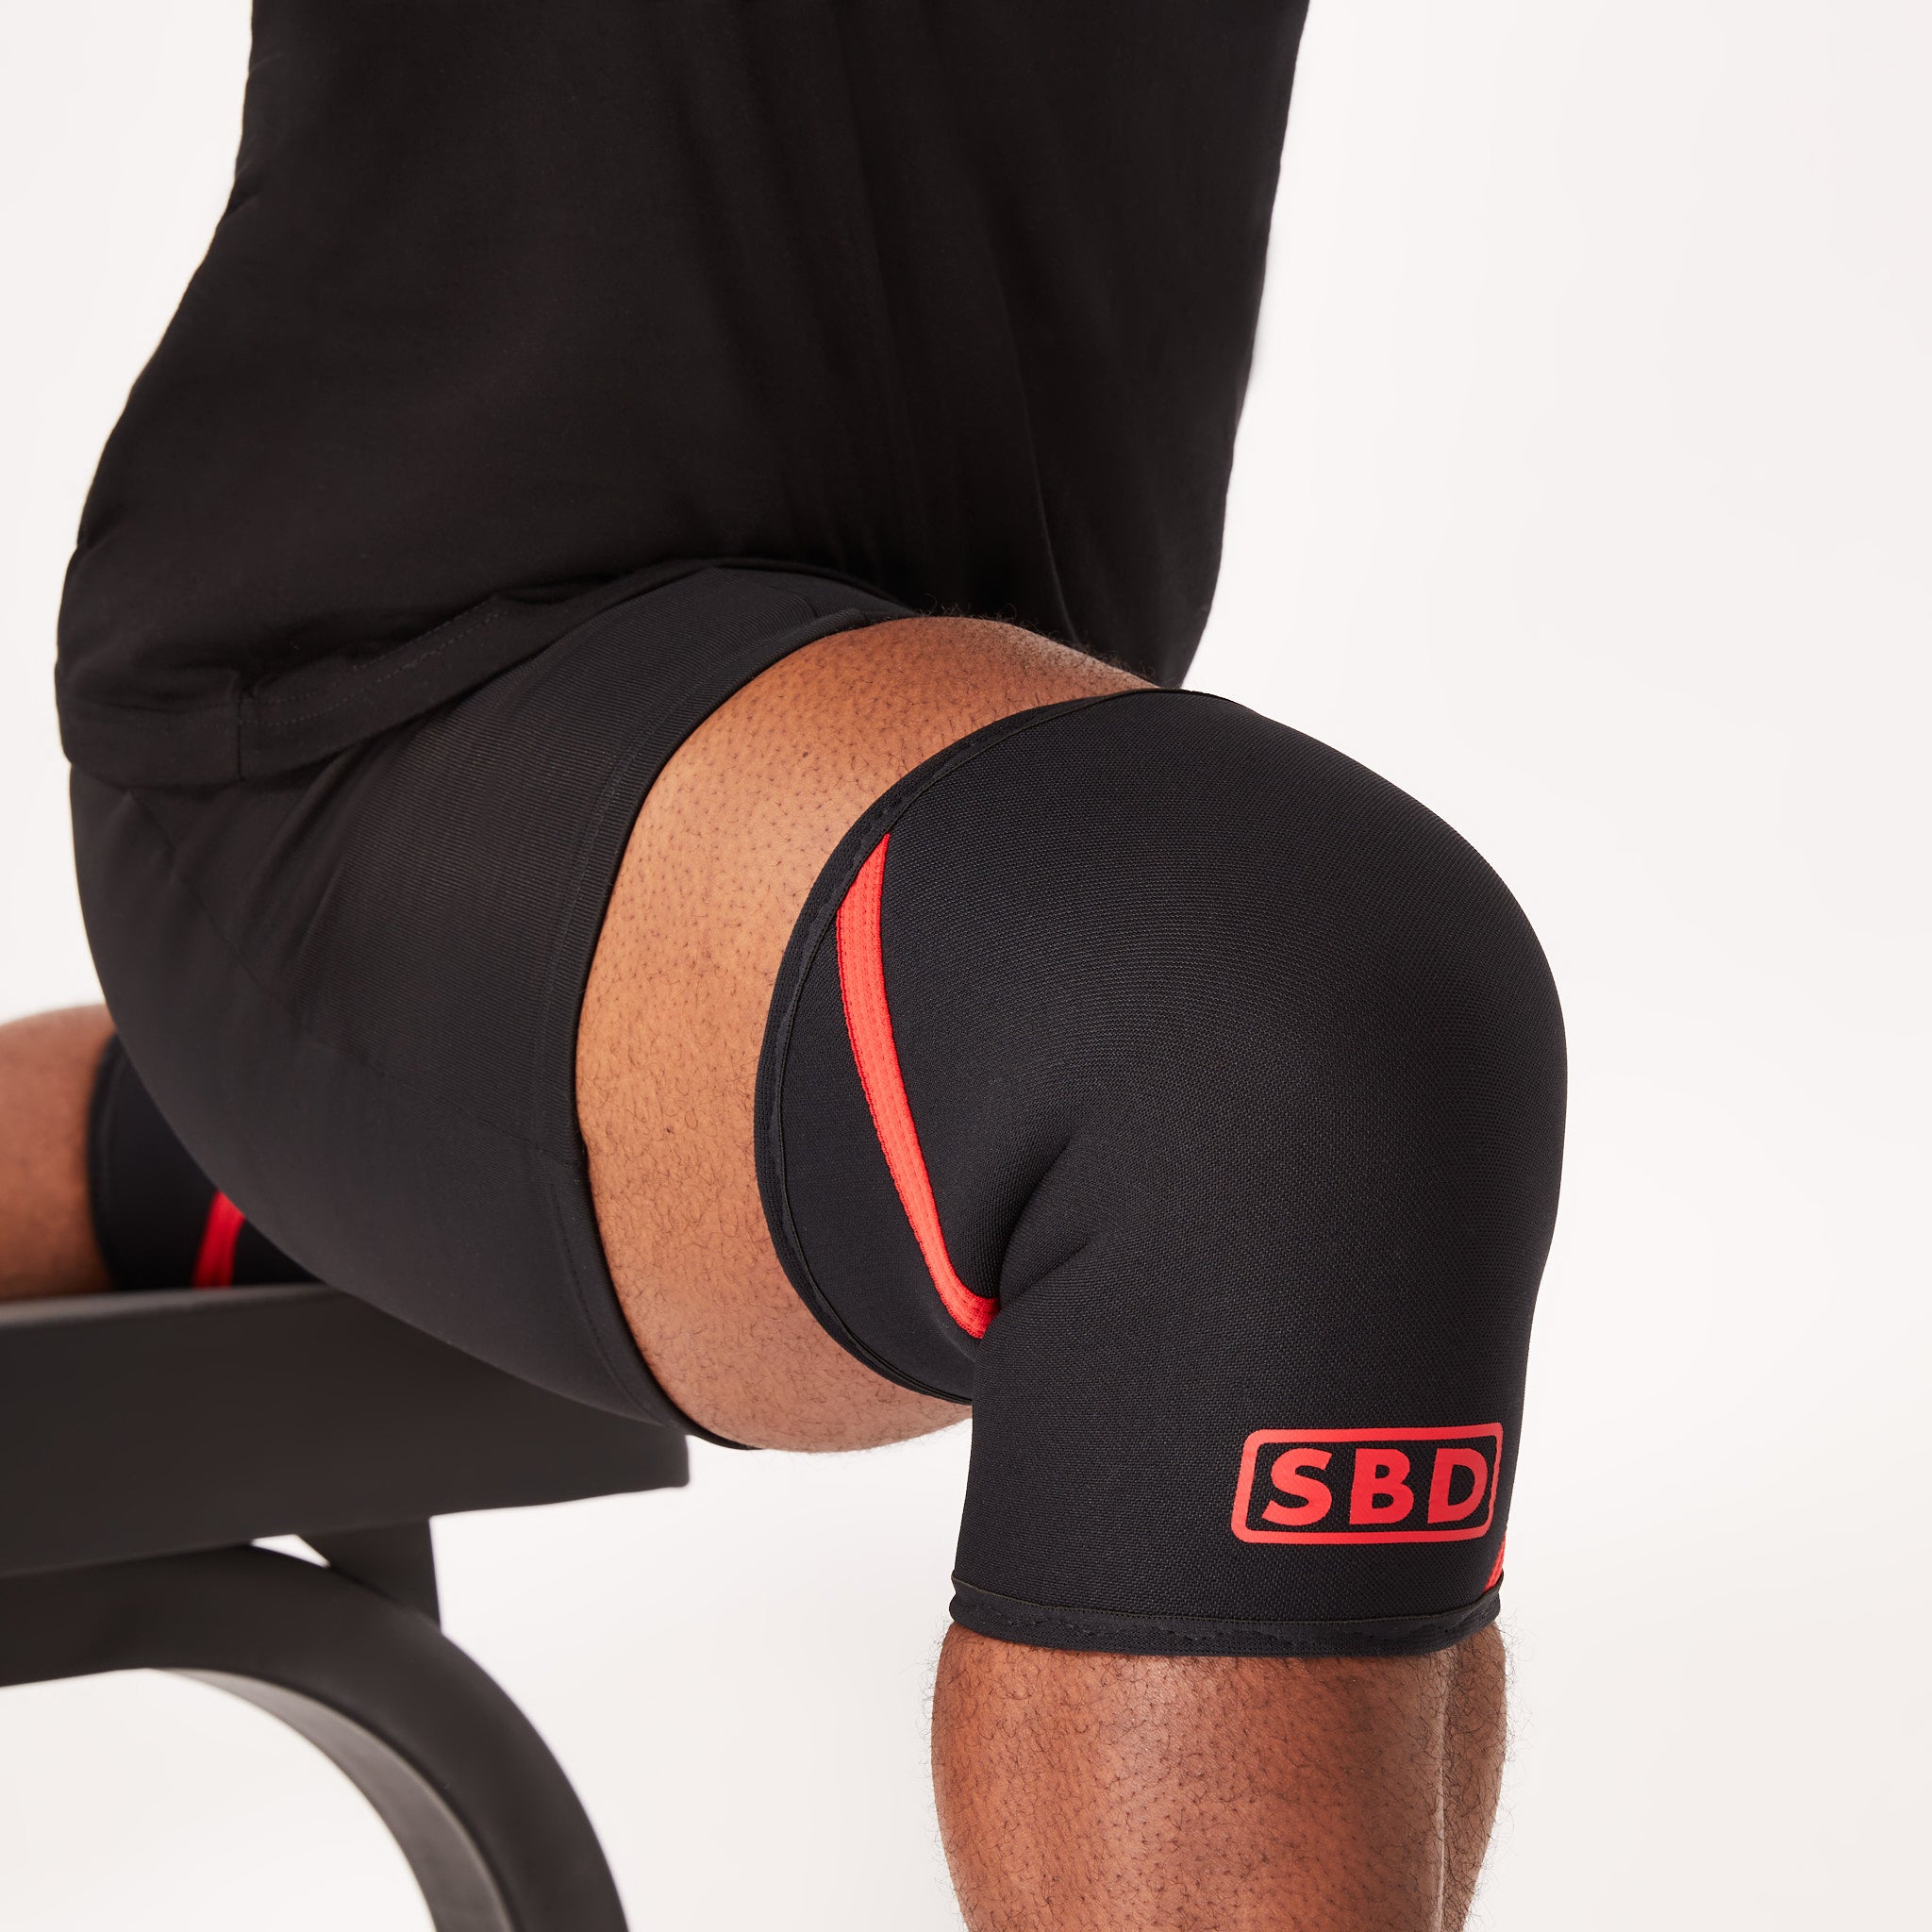 Black Compression Knee Sleeve - (1 sleeve) –